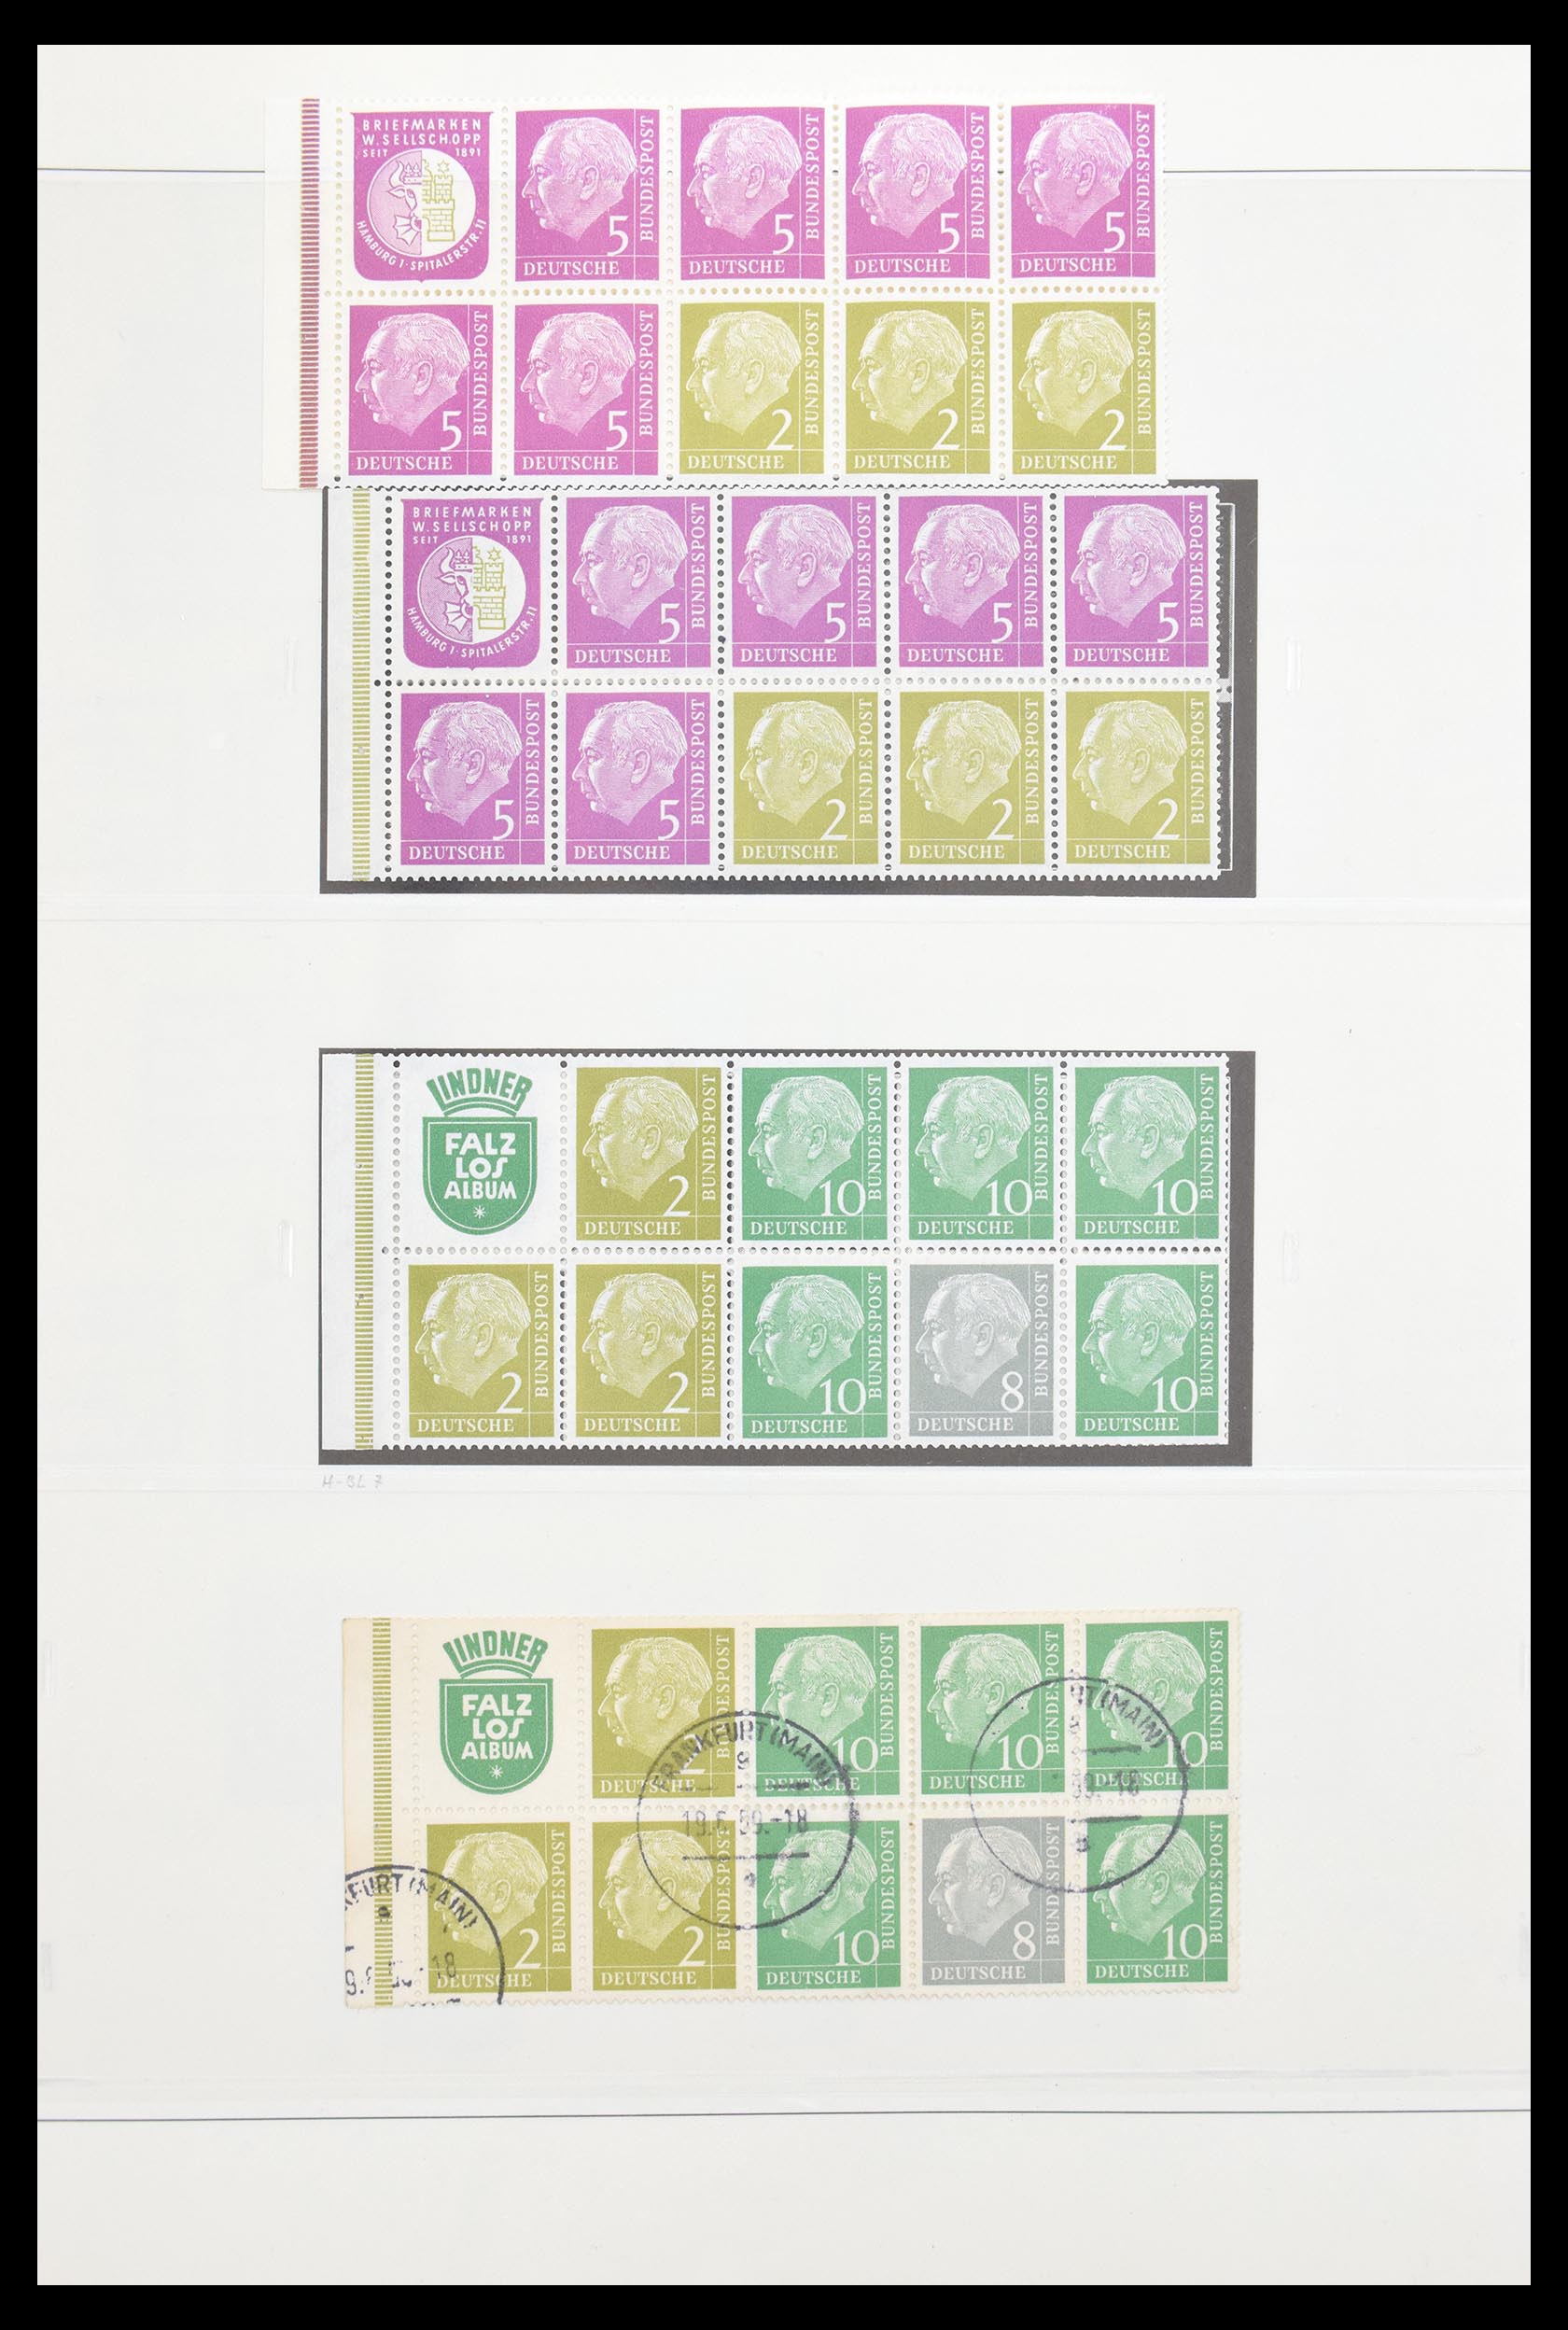 30605 009 - 30605 Bundespost combinaties 1951-1974.